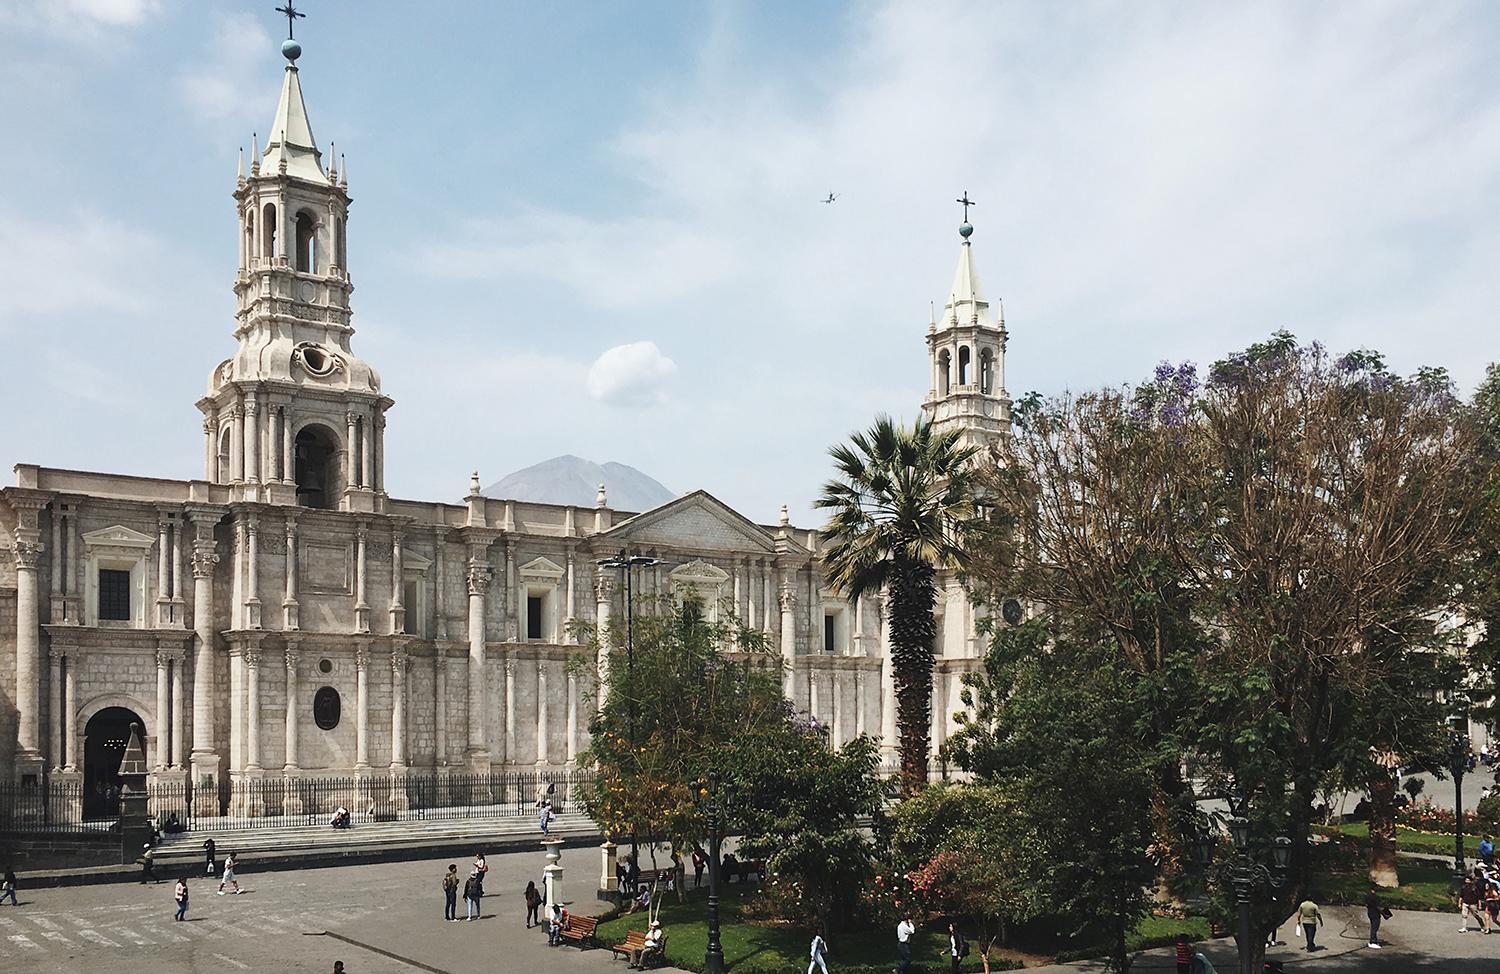 Obligatorio sello Trampas Qué hacer en Arequipa, la ciudad blanca de Perú - de postales urbanas